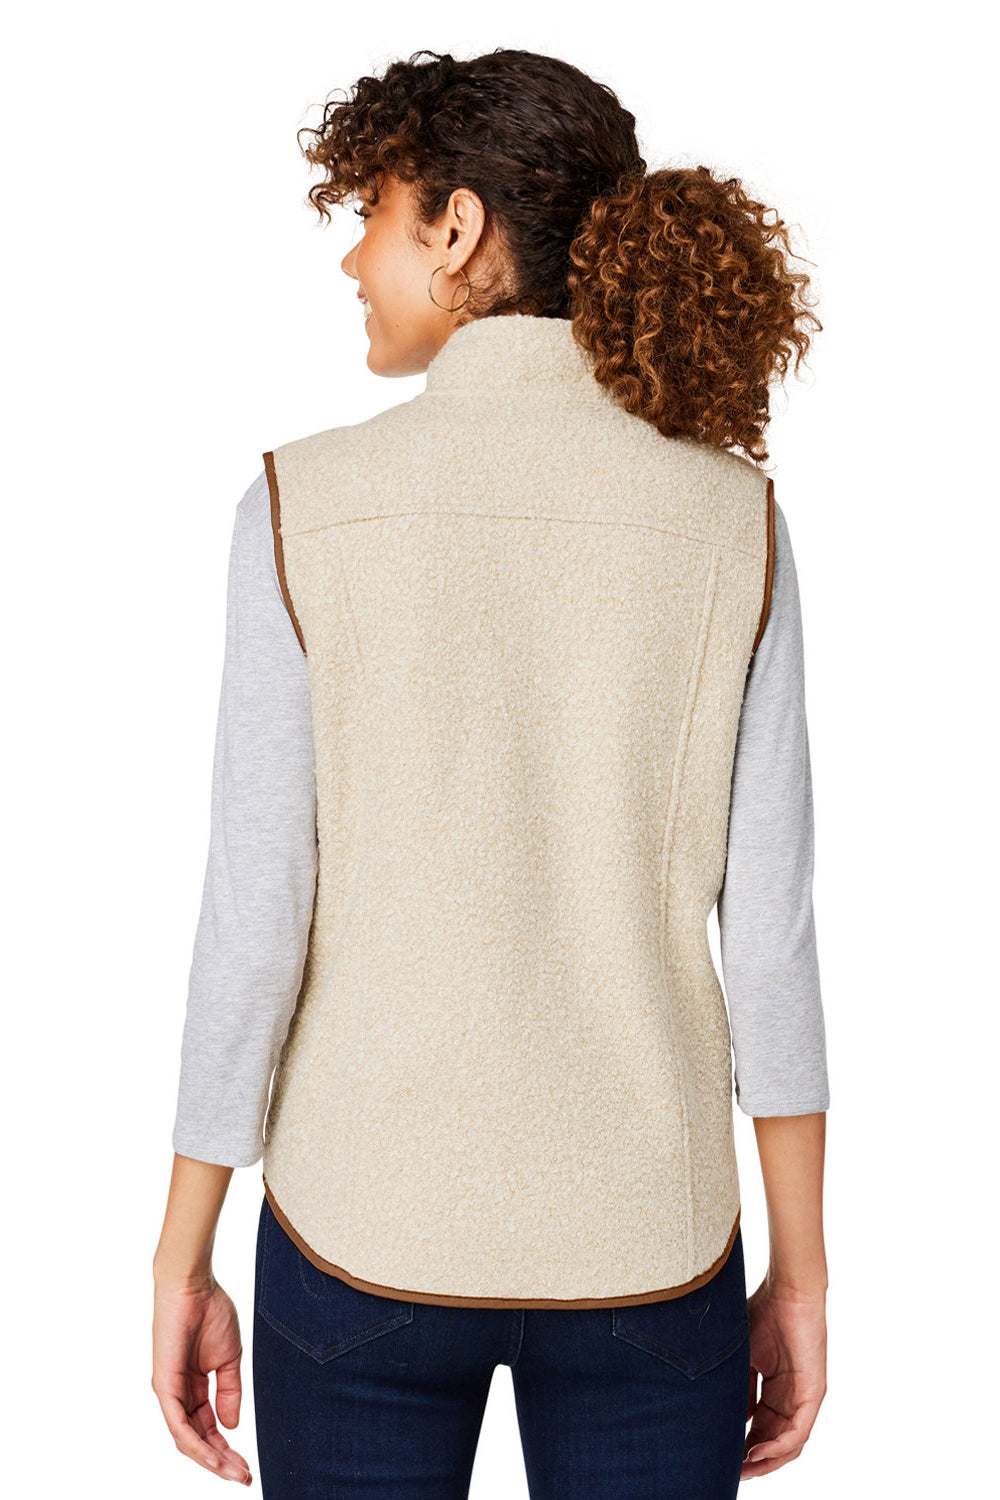 North End NE714W Womens Aura Sweater Fleece Full Zip Vest Heather Oatmeal/Teak Back